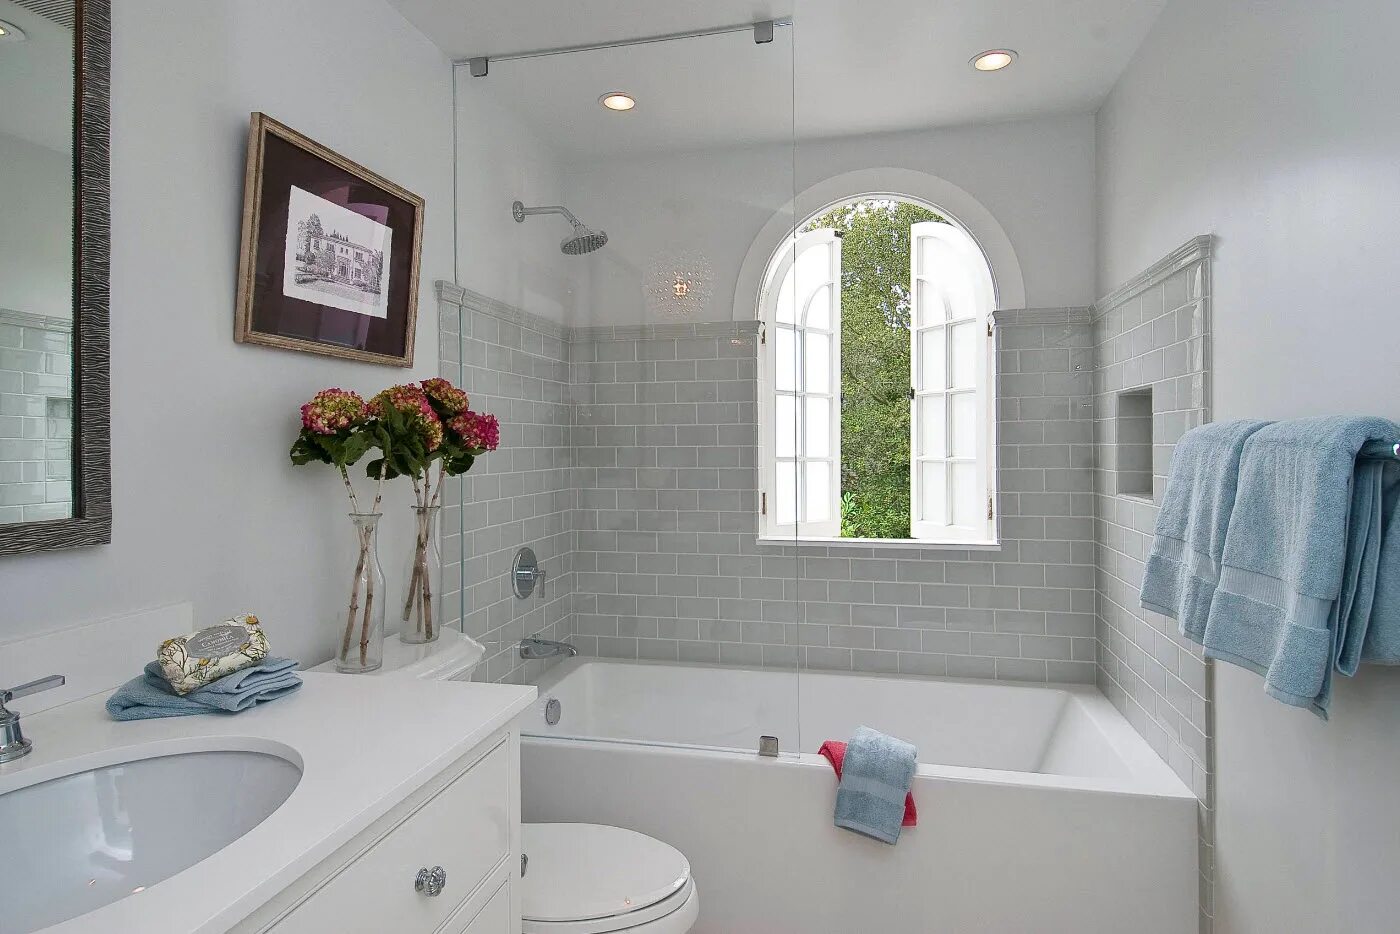 Интерьер ванной комнаты с окном. Ванная с окном в частном доме. Небольшая ванная с окном. Ванная в американском стиле.